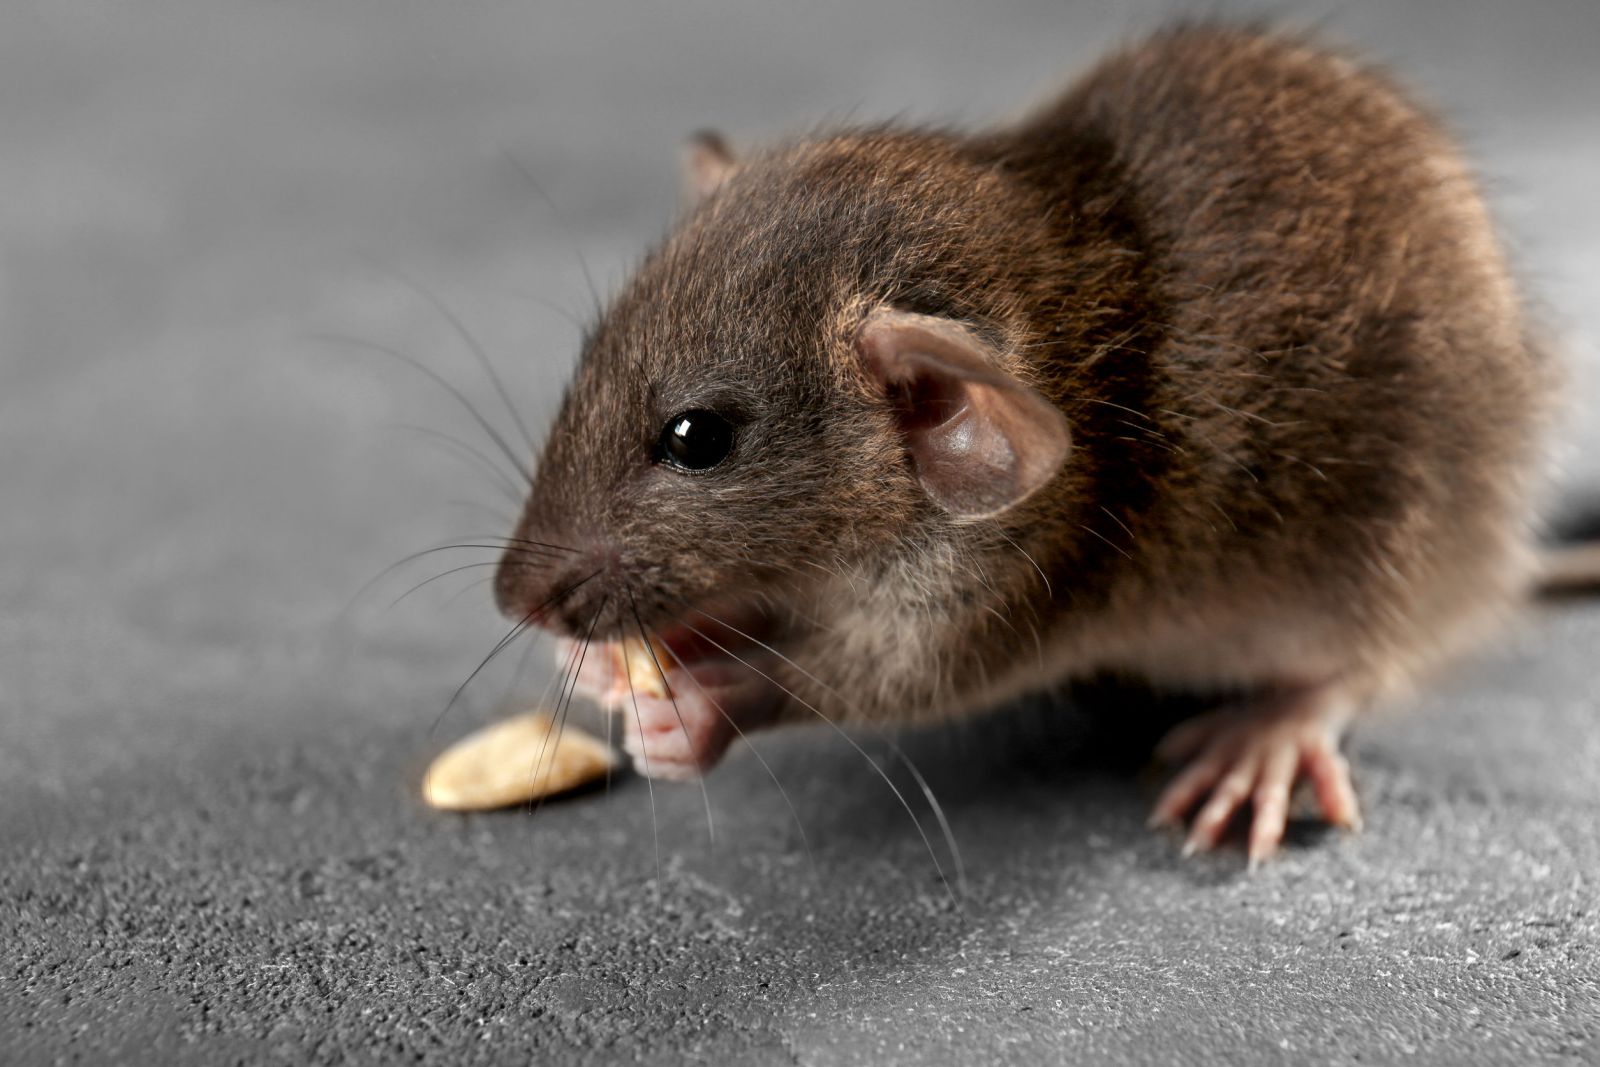 Ratinho comendo grão no chão